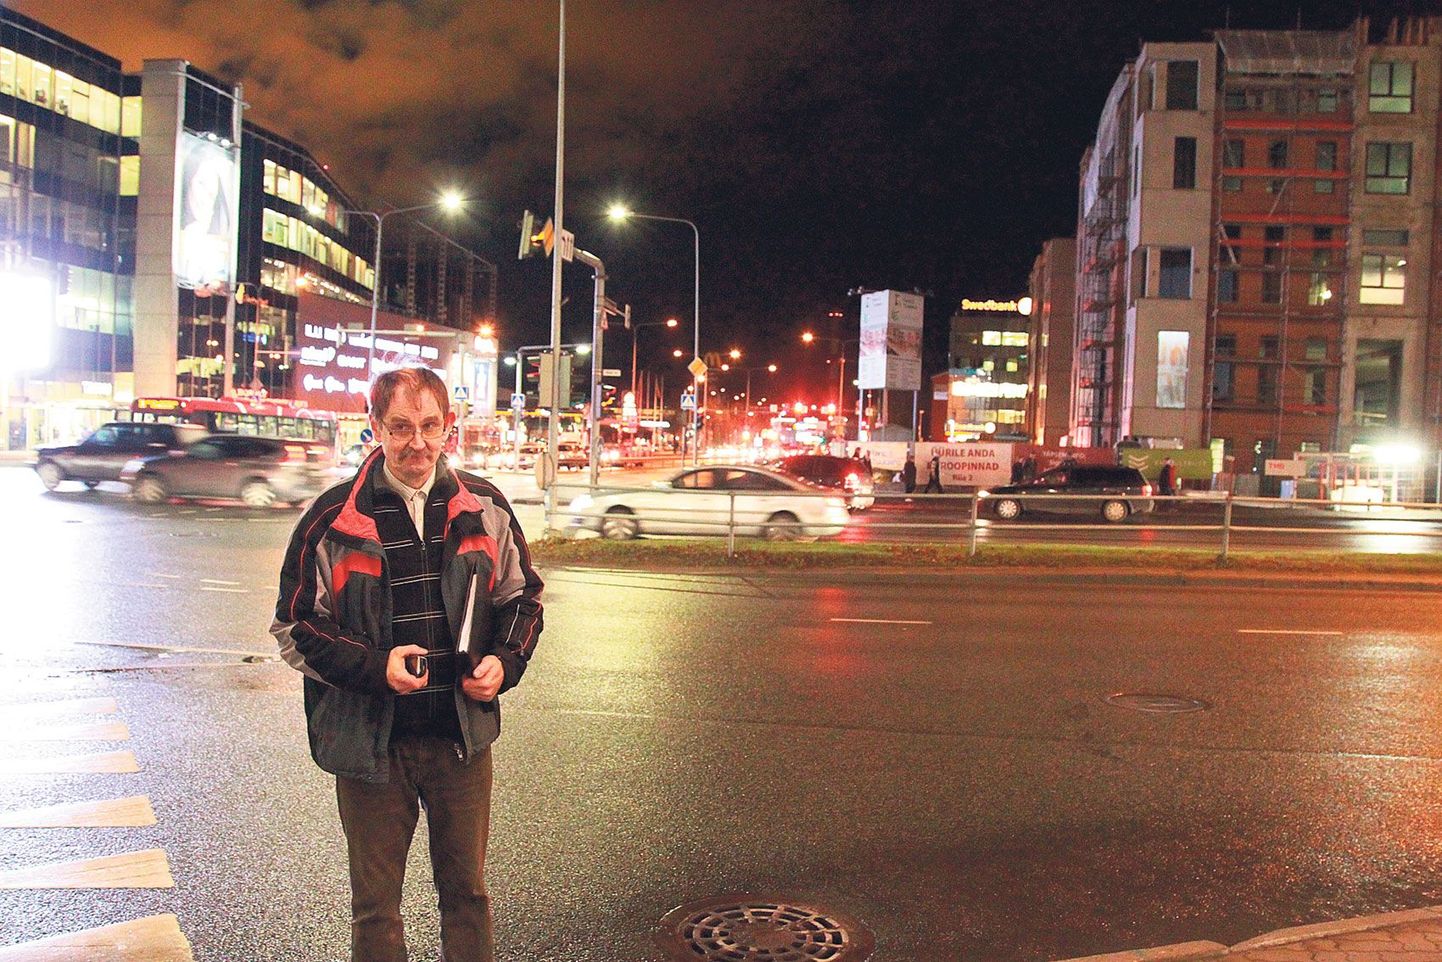 Liiklusekspert Sulev Sannik tegi kolmapäeval Riia-Turu ristmiku fooriprogrammide katsetusi, et selgitada Riia tänava algusesse ülekäiguraja rajamise võimalust ning selle mõju Tartu liikluse sujuvusele.